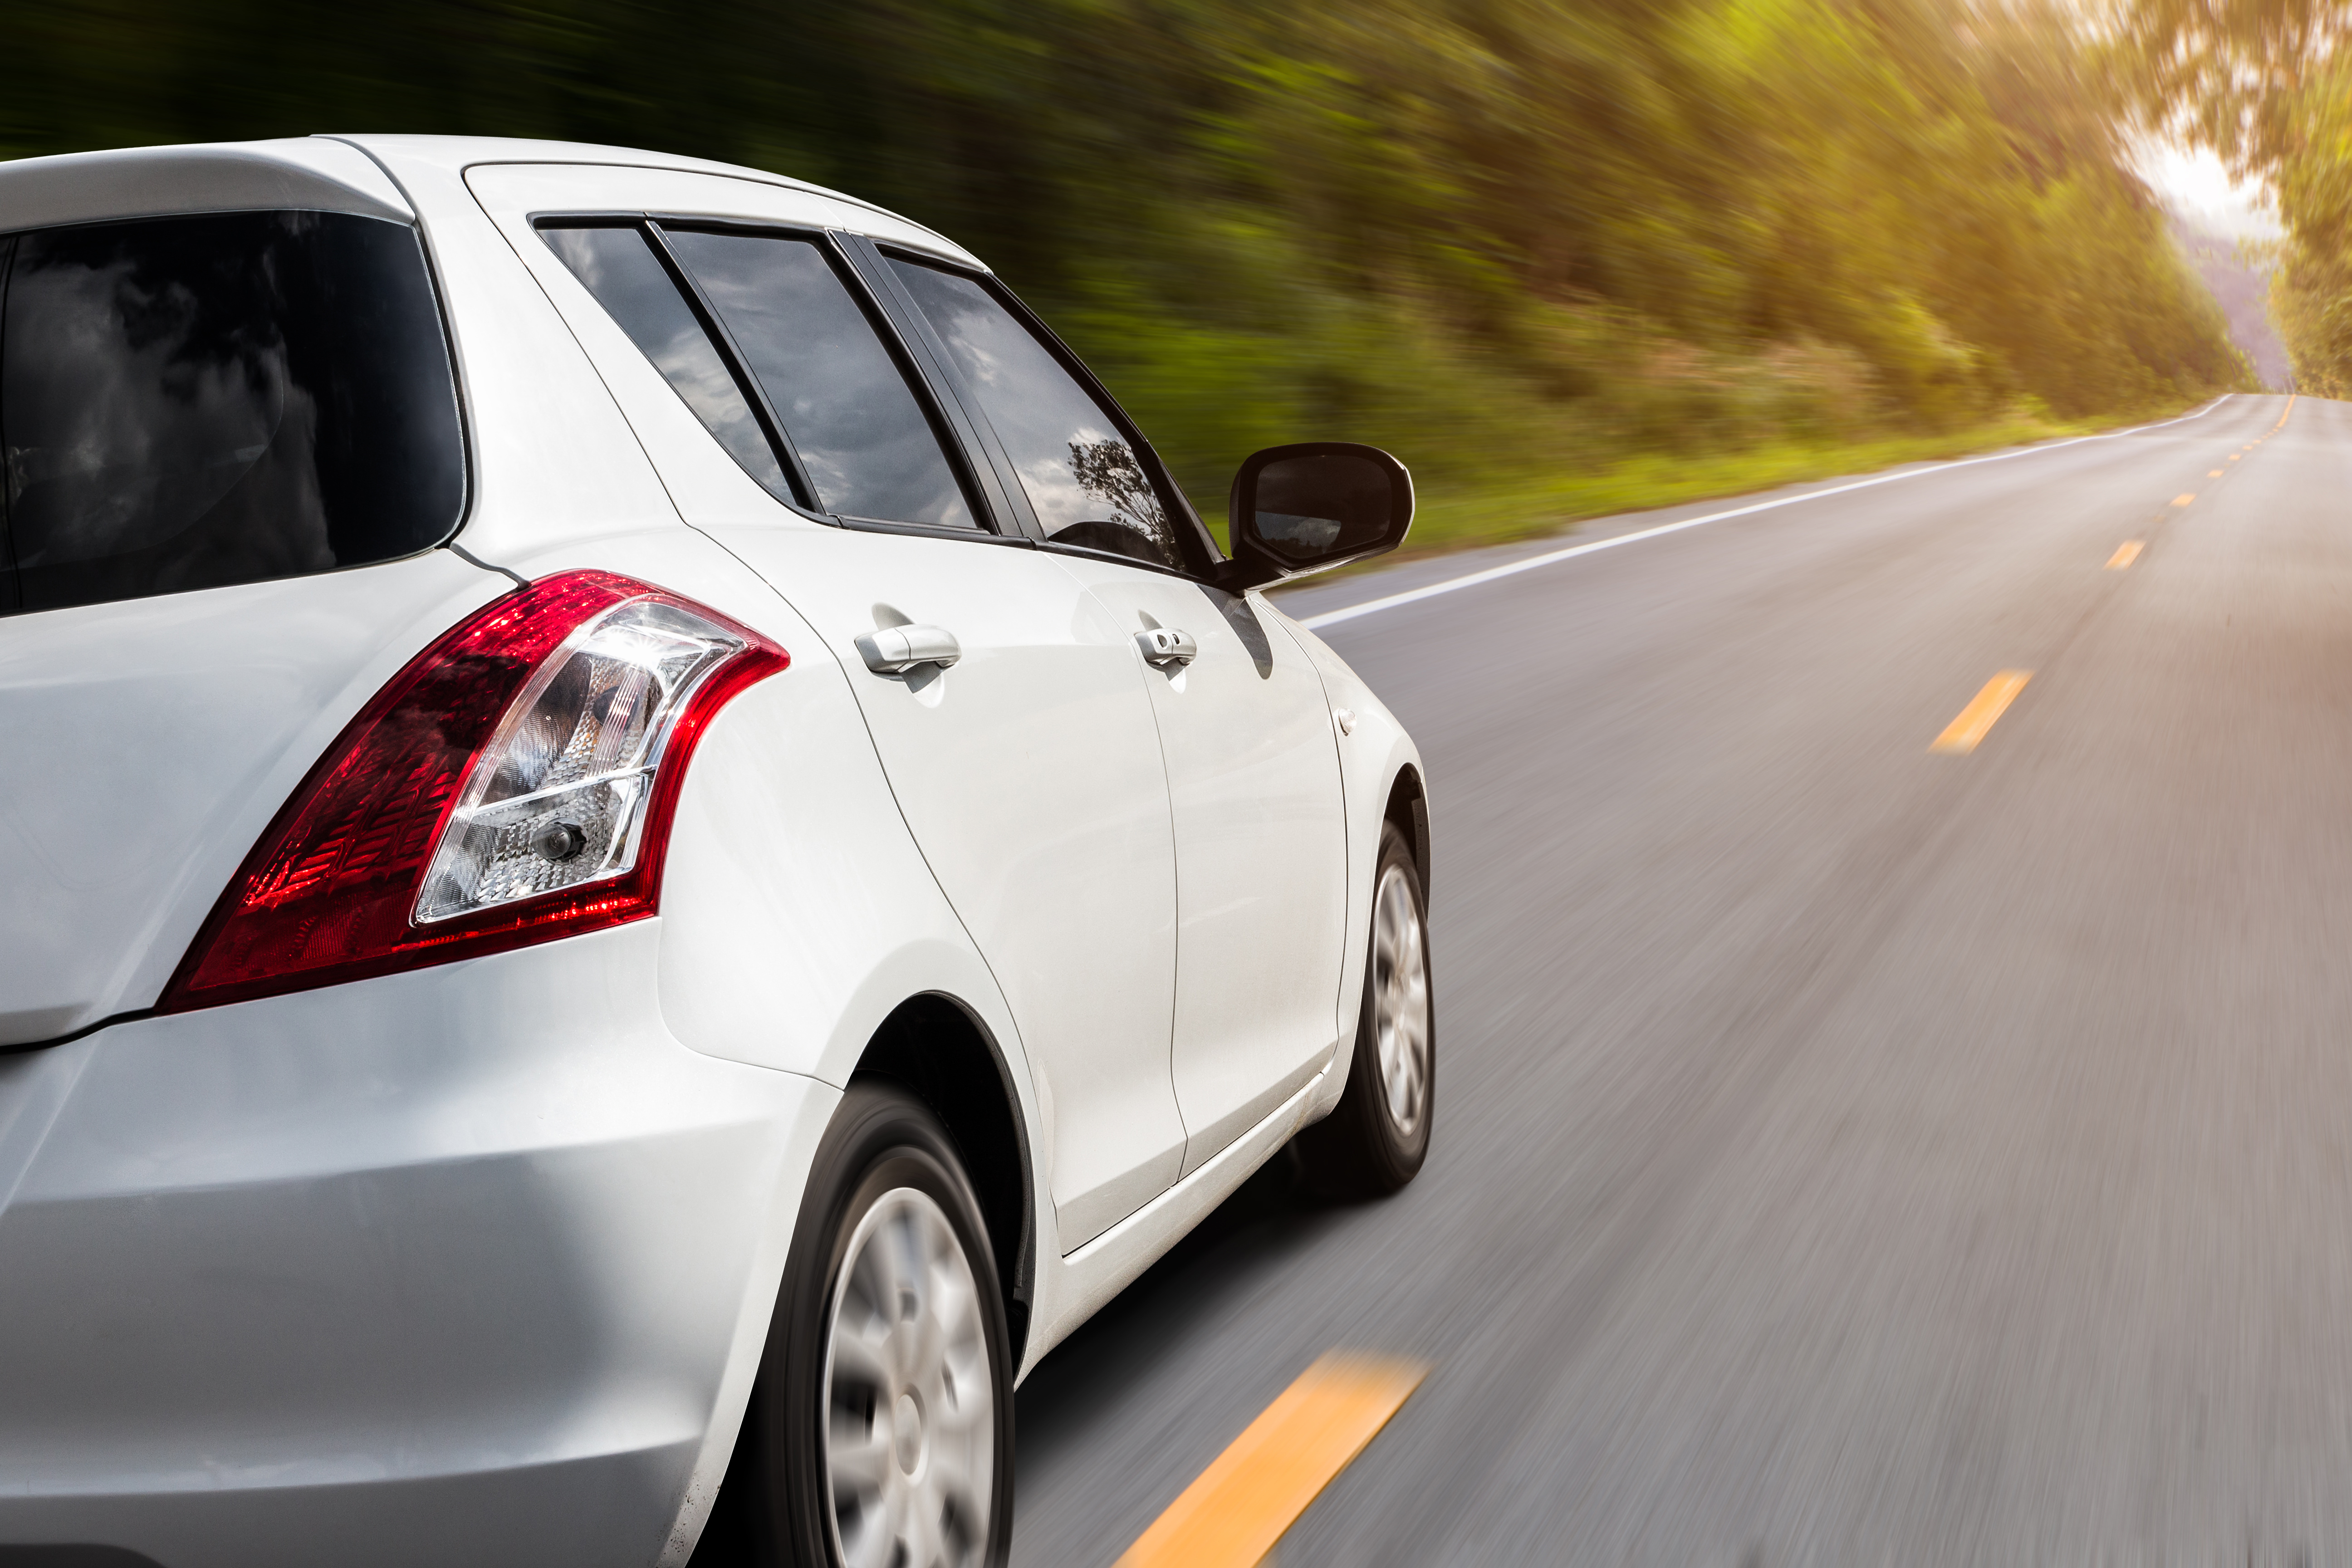 Save on Suzuki Swift Insurance | Car Insurance Blog | Hippo.co.za